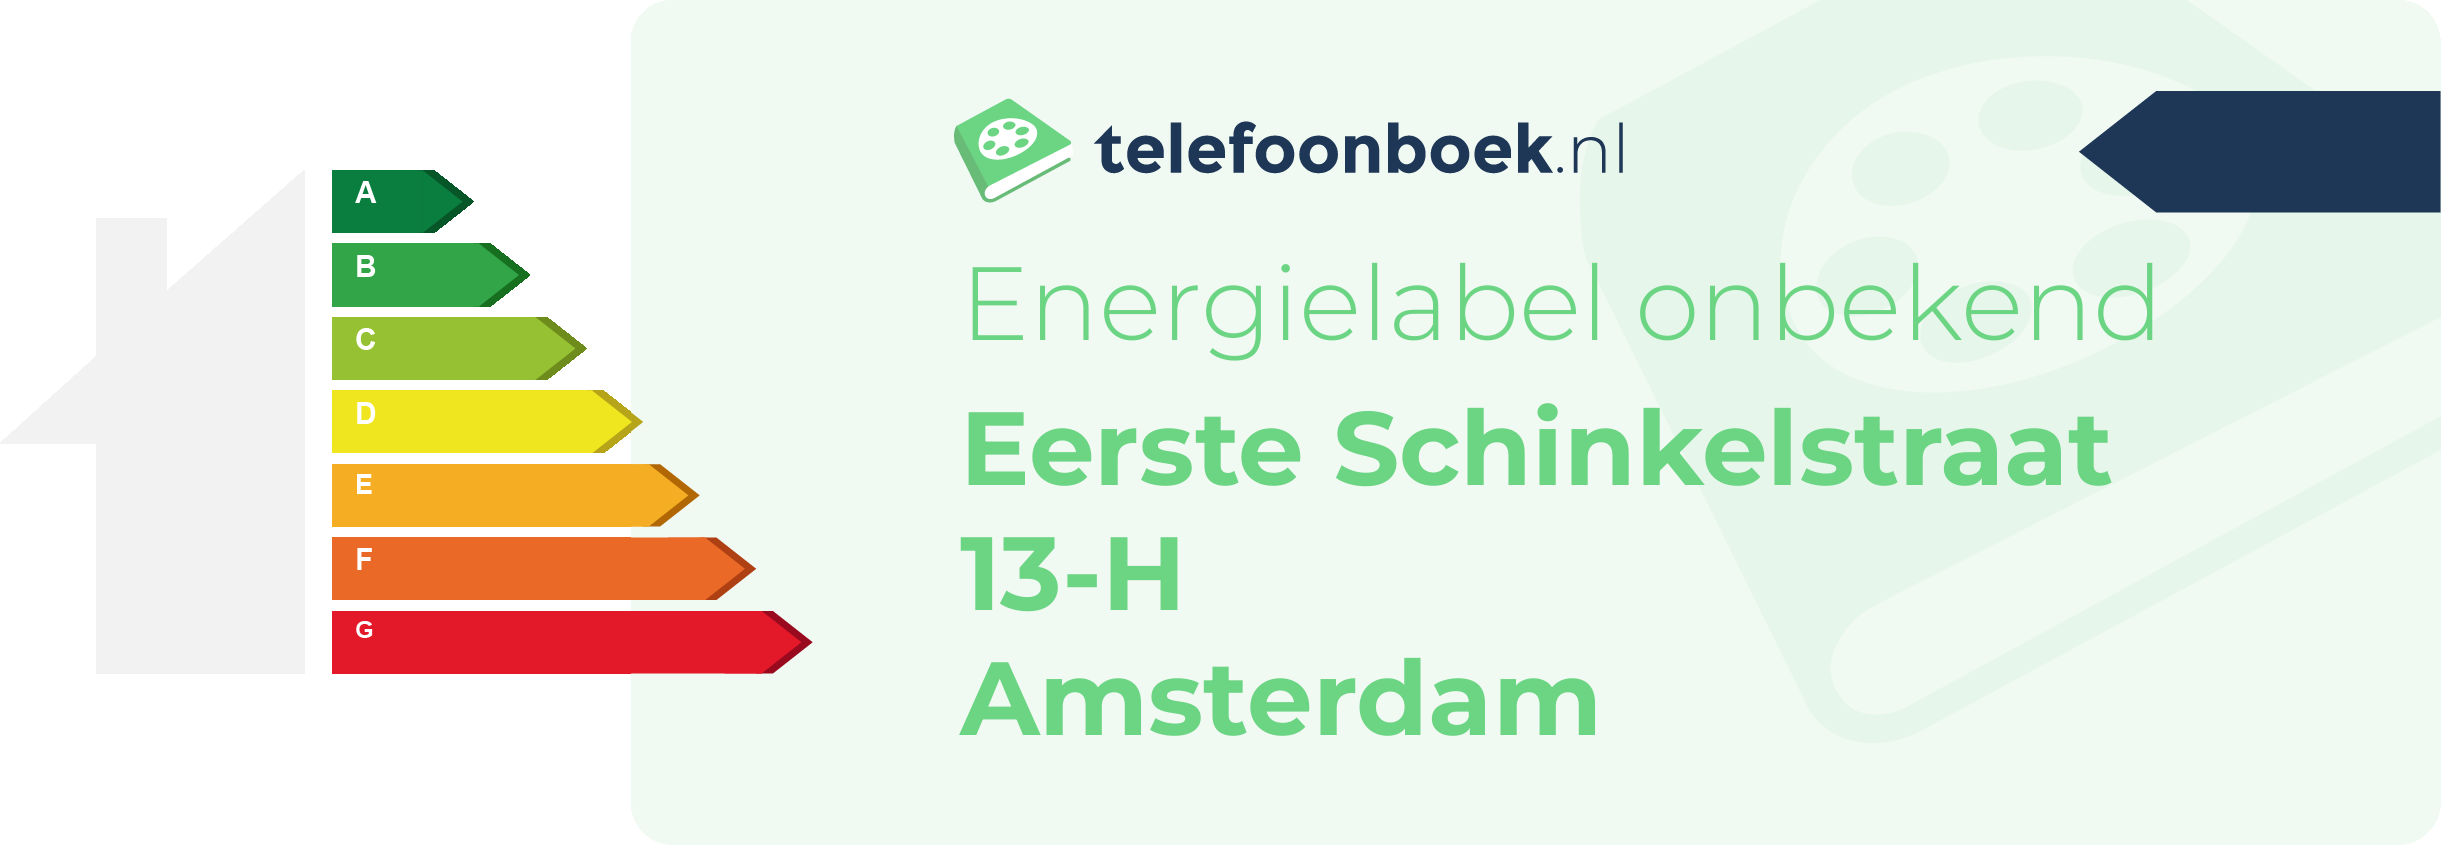 Energielabel Eerste Schinkelstraat 13-H Amsterdam